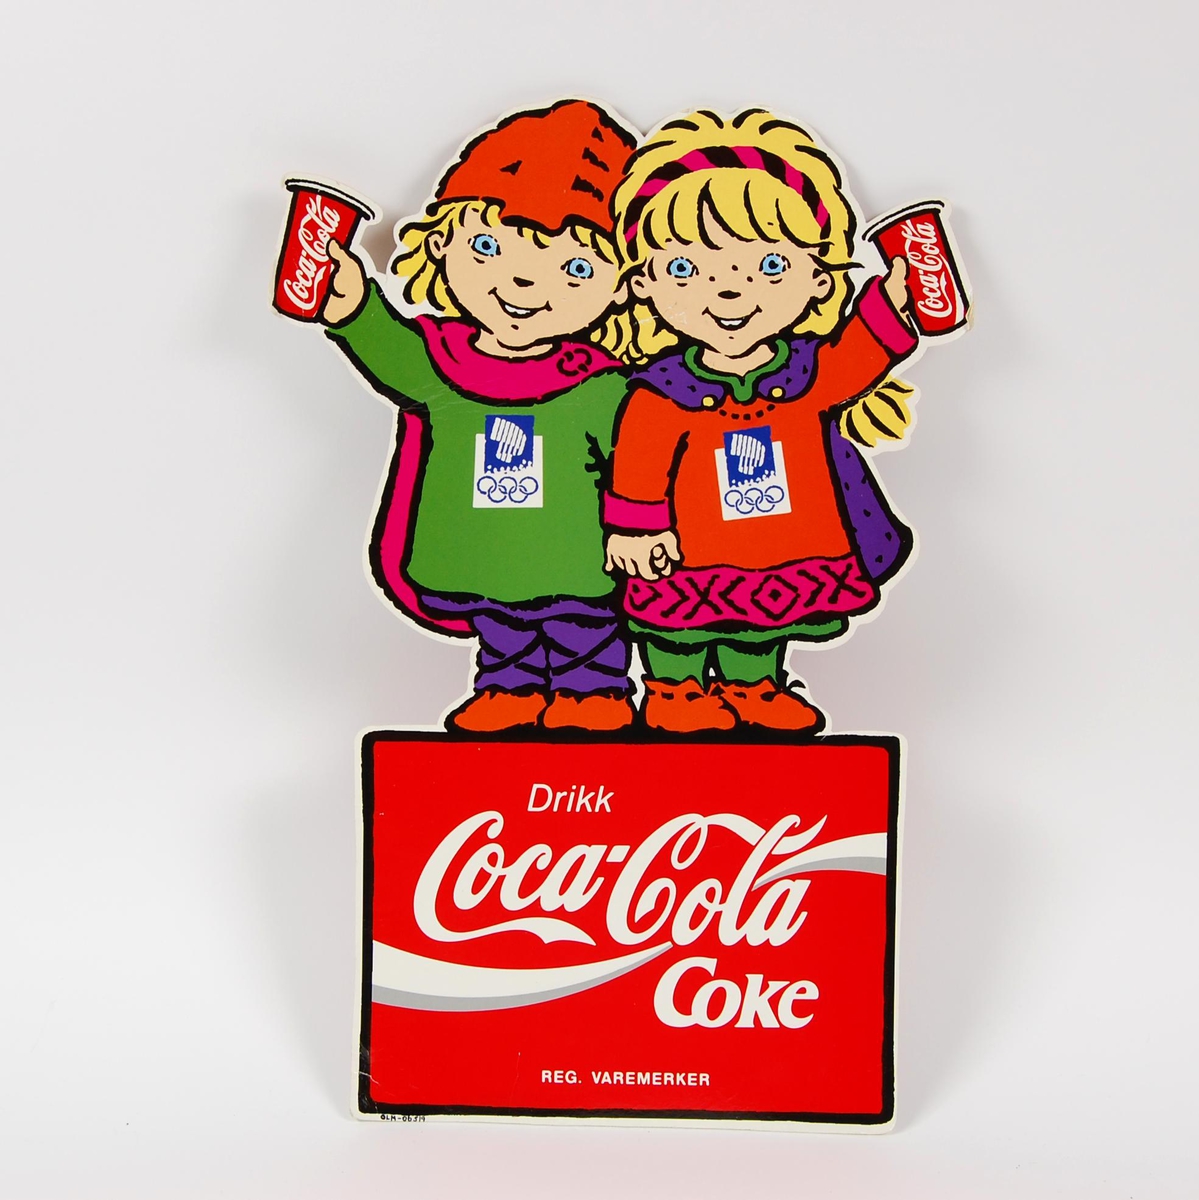 Reklameskilt med logo for Coca-Cola. Maskotene for de olympiske leker på Lillehammer i 1994, Kristin og Håkon, utgjør store deler av motivet og formen på skiltet. Skiltet er tosidig og likt på begge sider. Skiltet har noe slitasje.